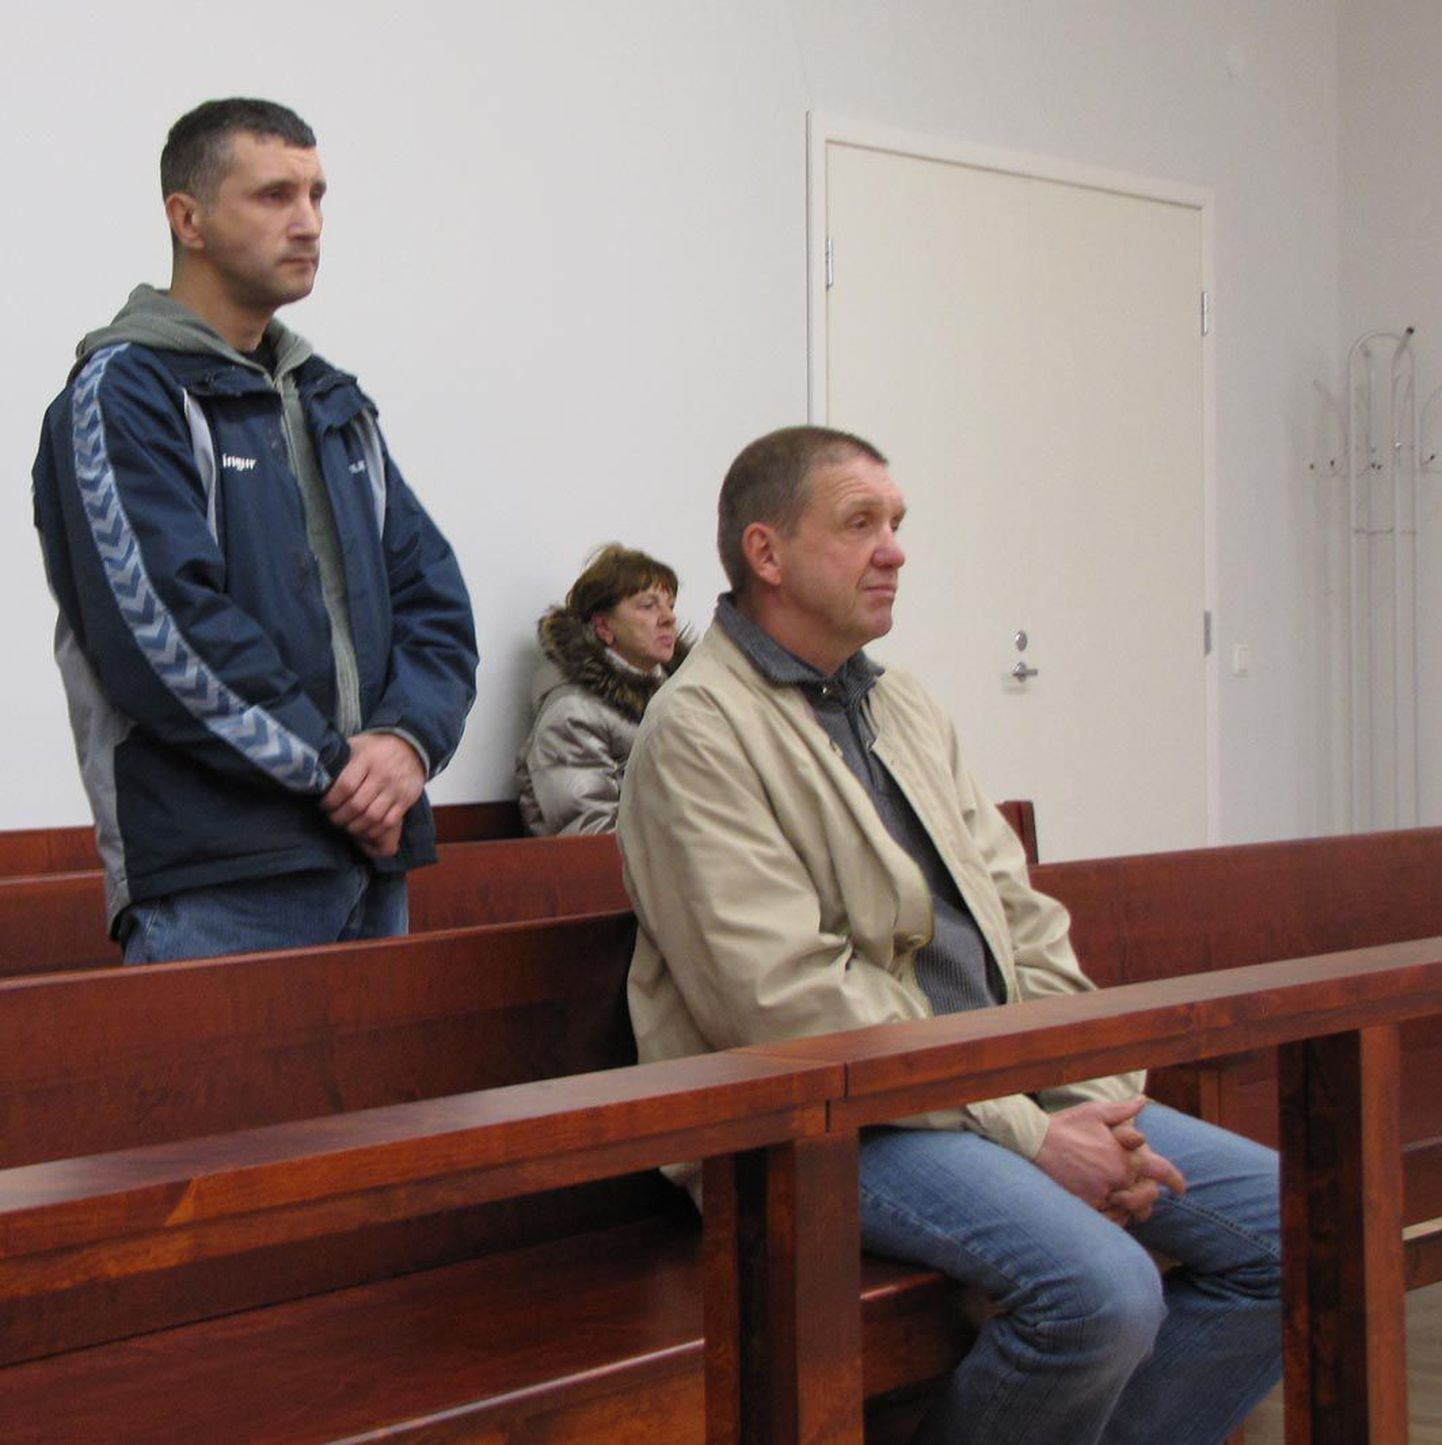 Surmaavarii kohtuprotsessil esines Marko Kadak (vasakul) kannatanu ja Osvald Puu süüdistatavana.